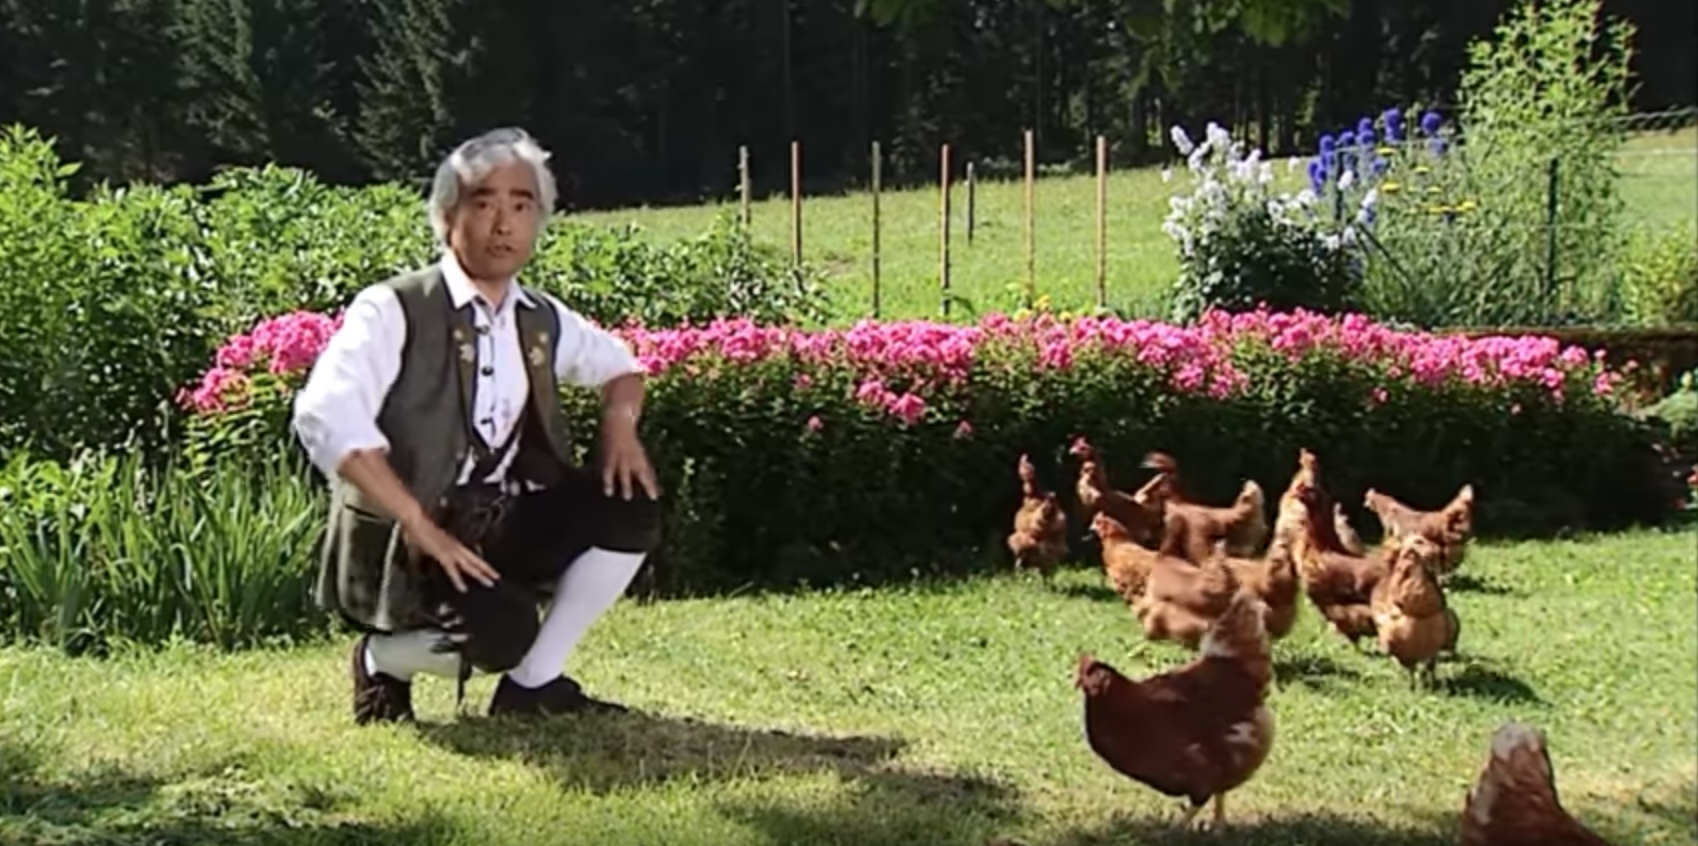 Takeo Ischi Chicken Yodeler